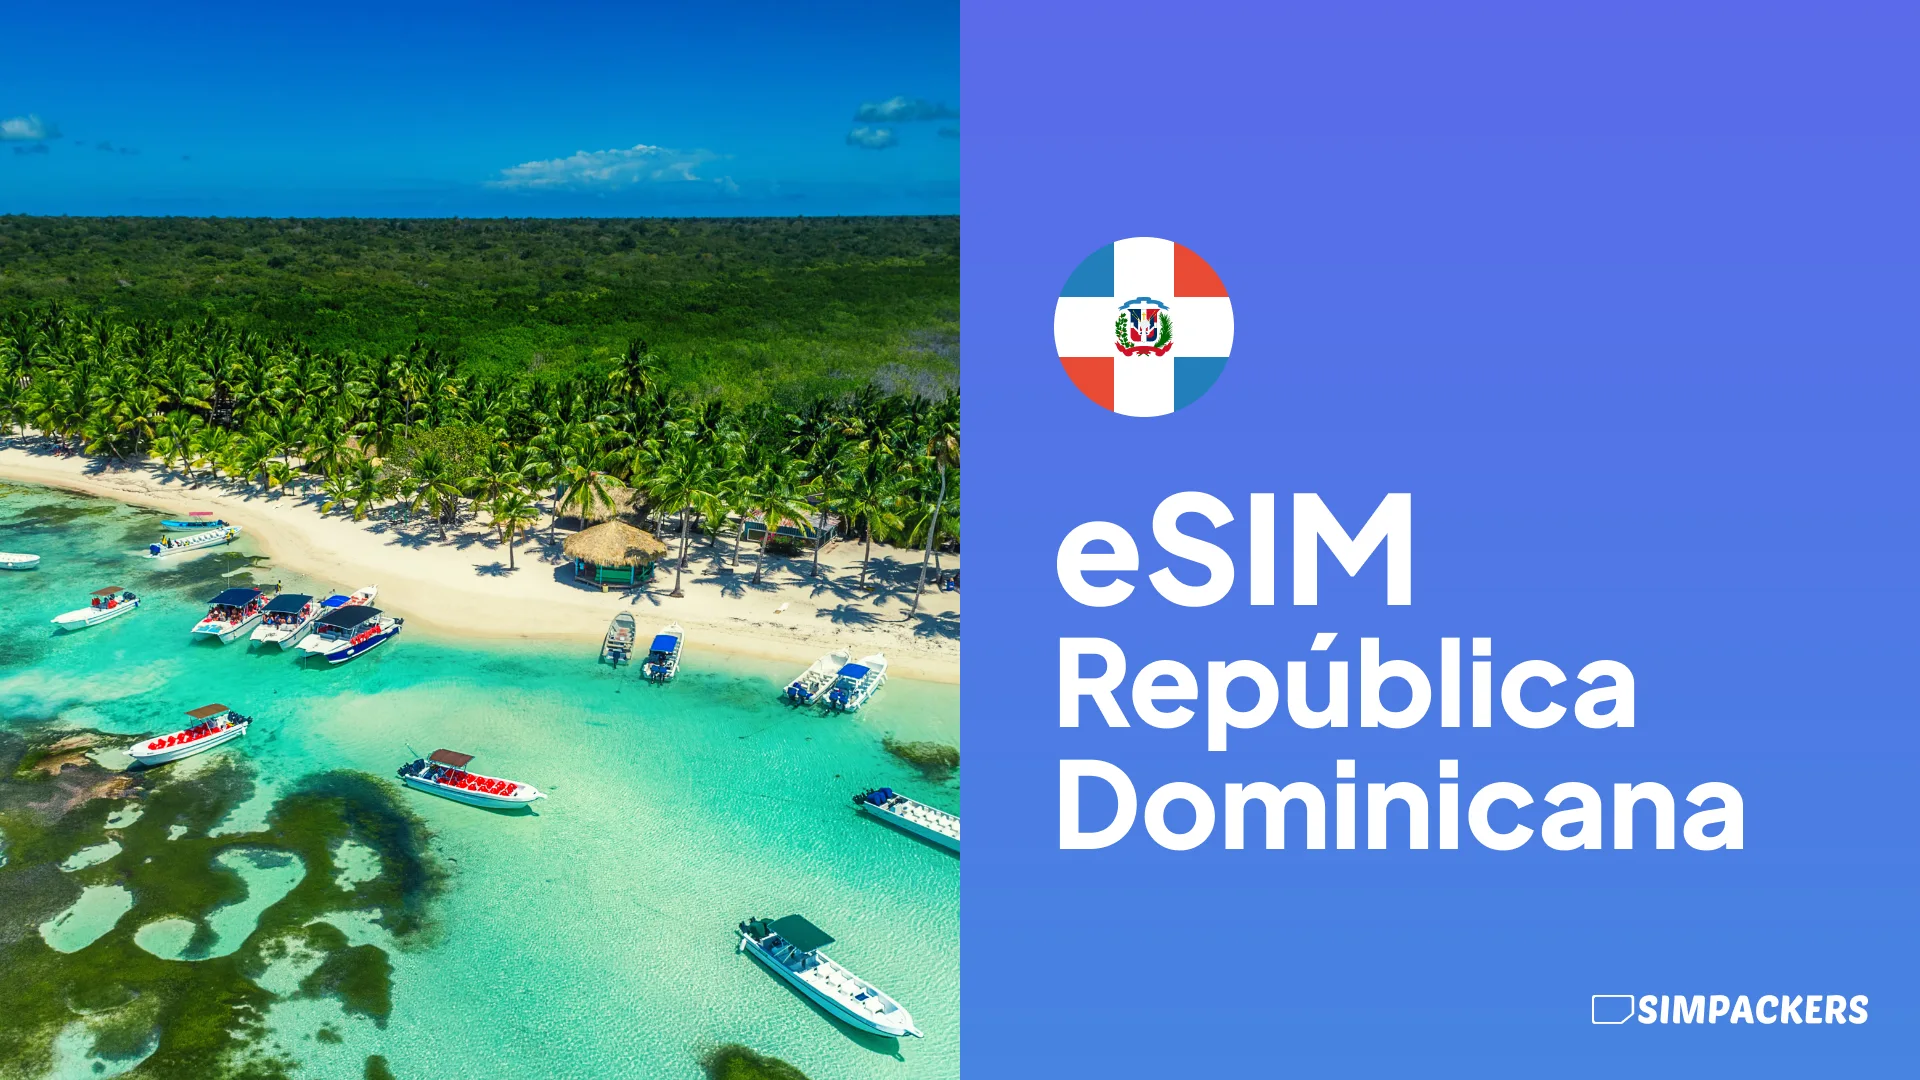 ES/FEATURED_IMAGES/esim-republica-dominicana.webp